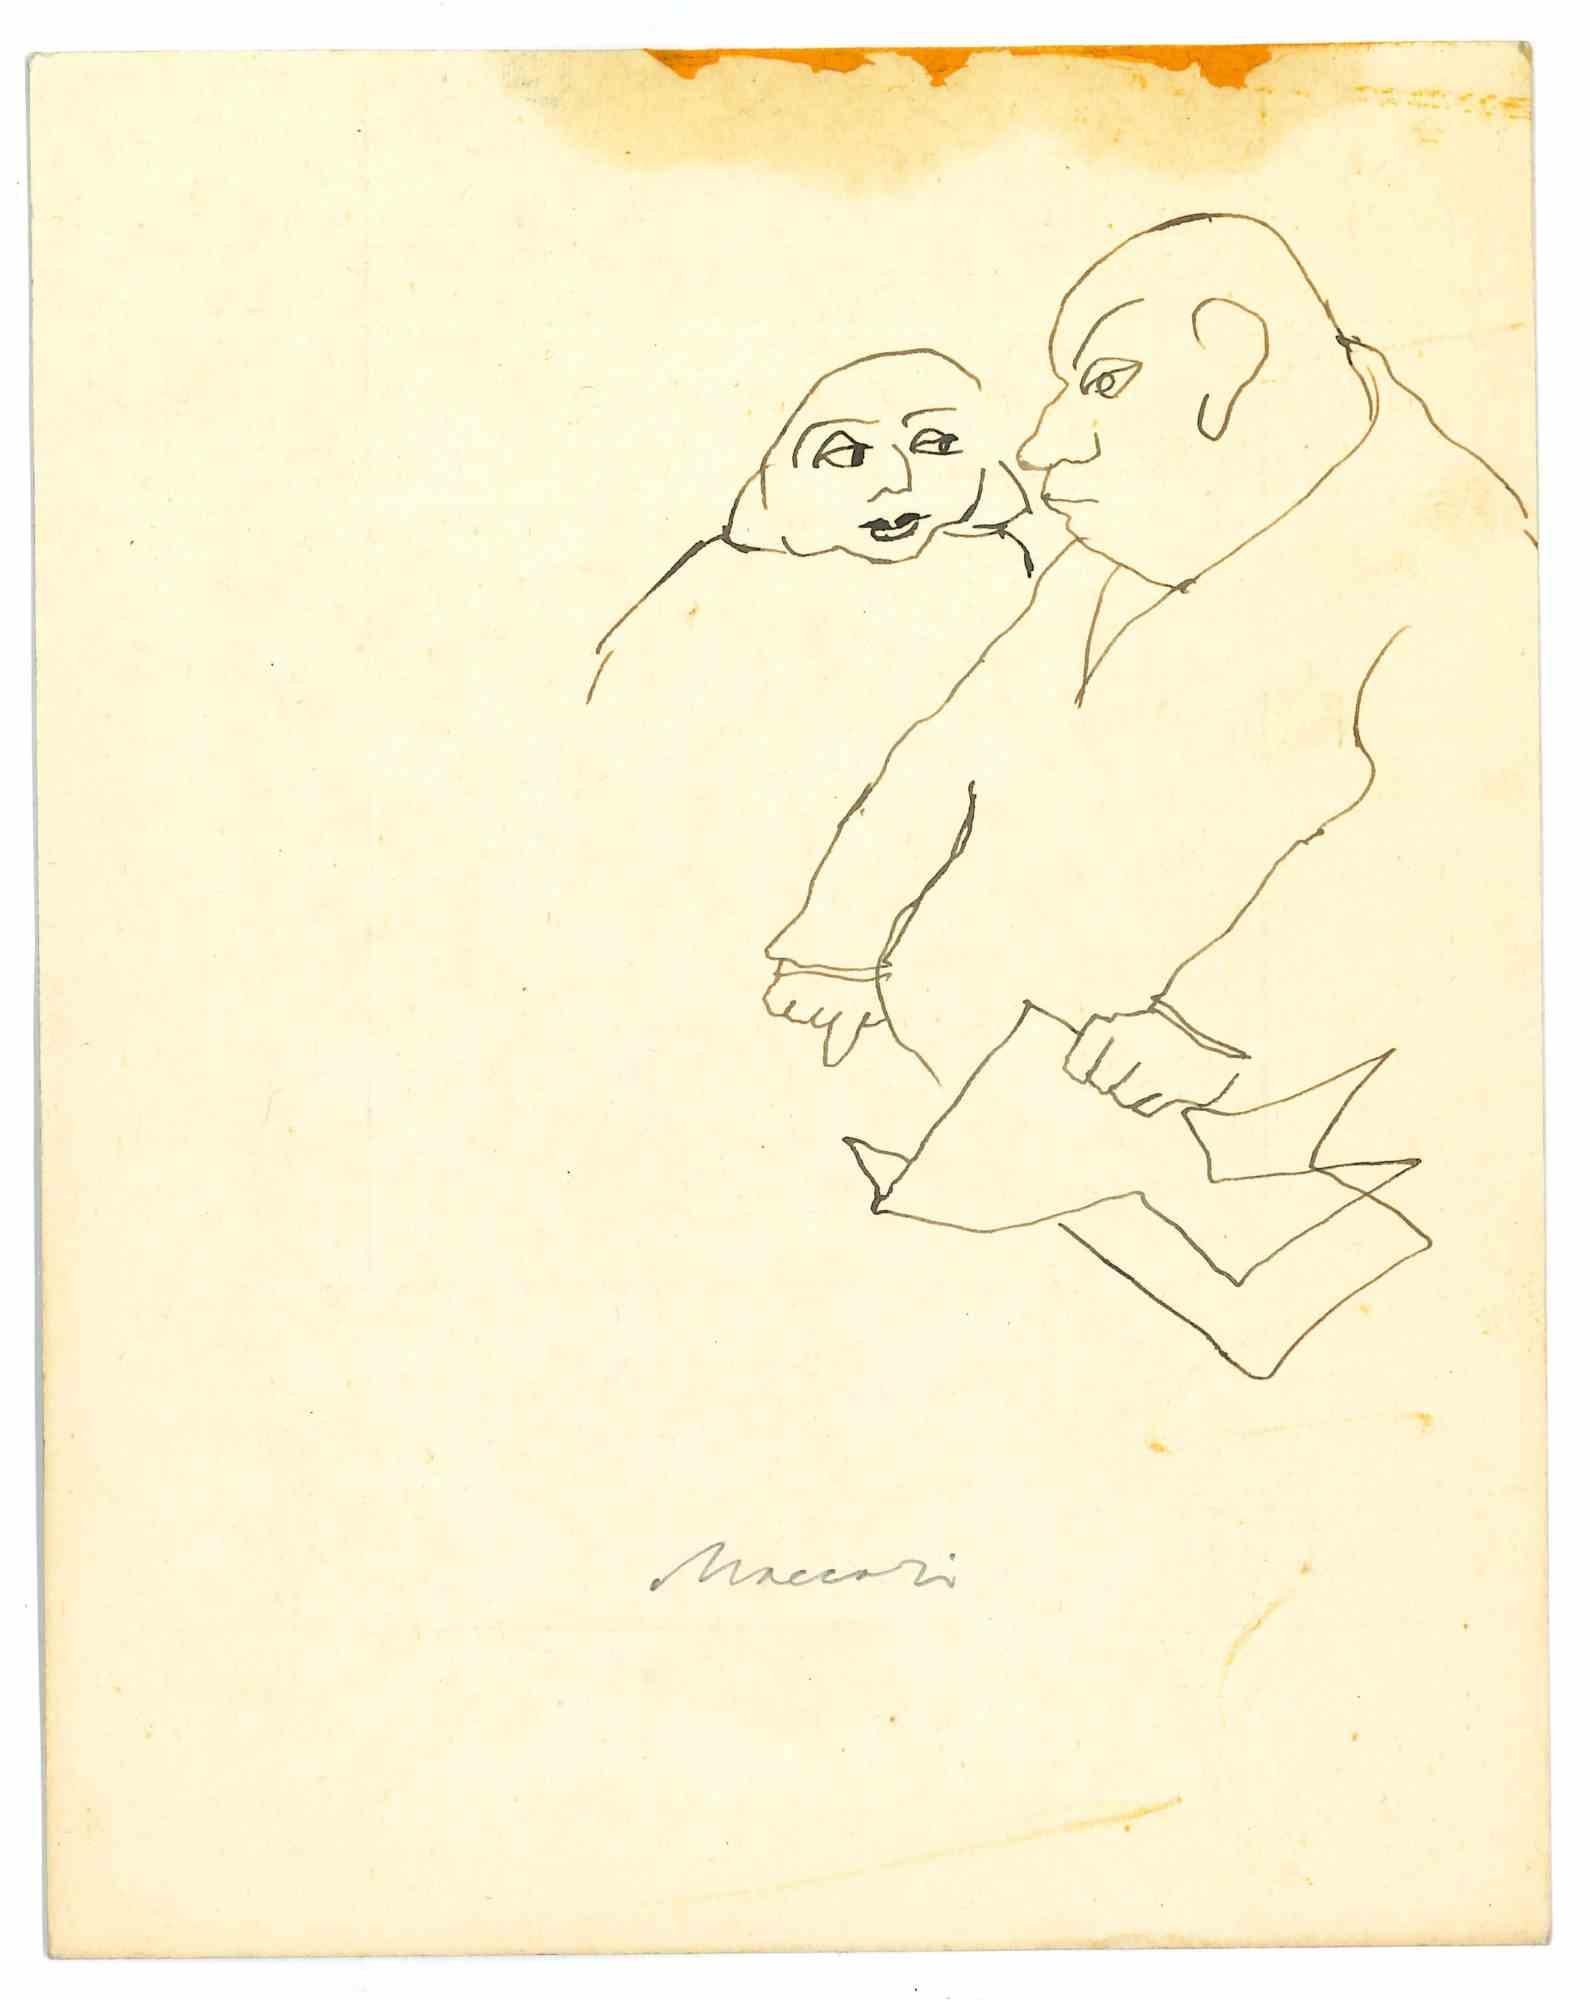 Conversation ist eine Porzellan-Tuschezeichnung von Mino Maccari (1924-1989) aus der Mitte des 20. Jahrhunderts.

Handsigniert.

Guter Zustand mit leichten Stockflecken.

Mino Maccari (Siena, 1924-Rom, 16. Juni 1989) war ein italienischer